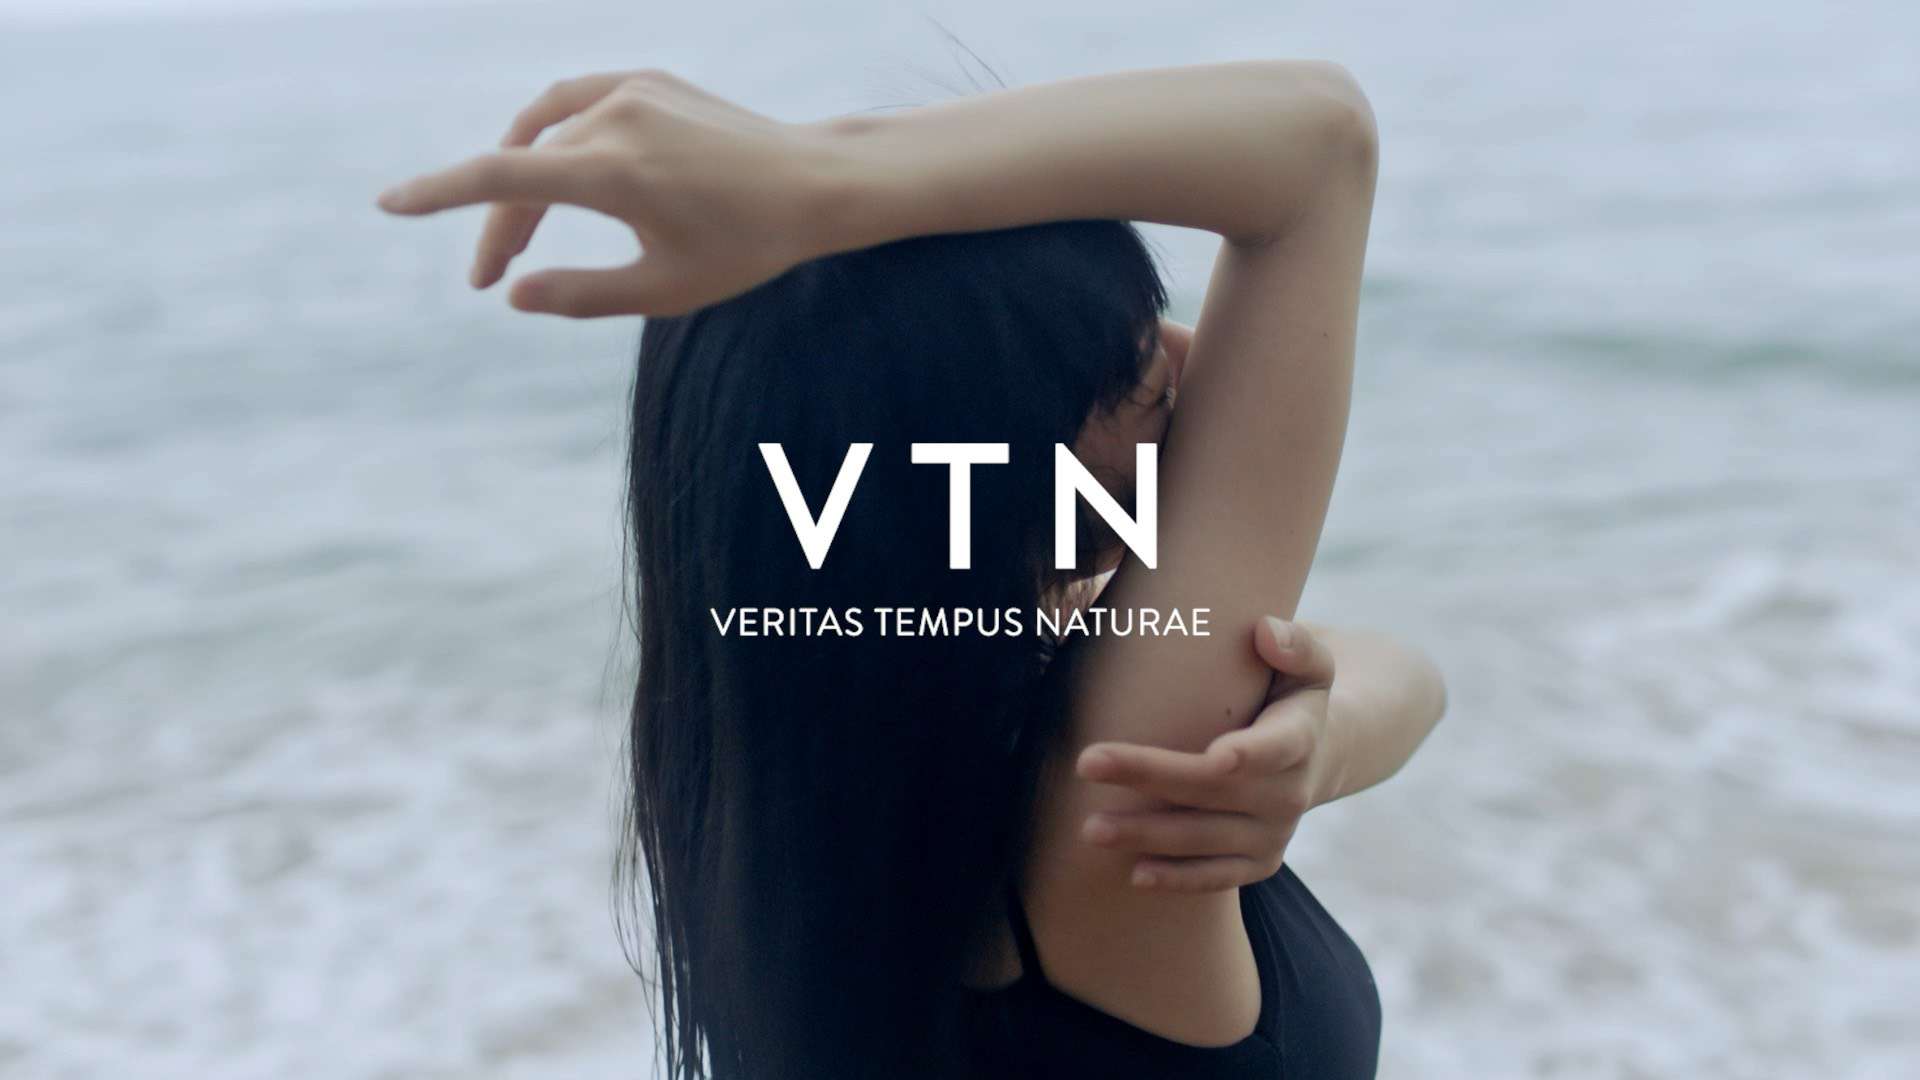 VTN品牌视频拍摄花絮